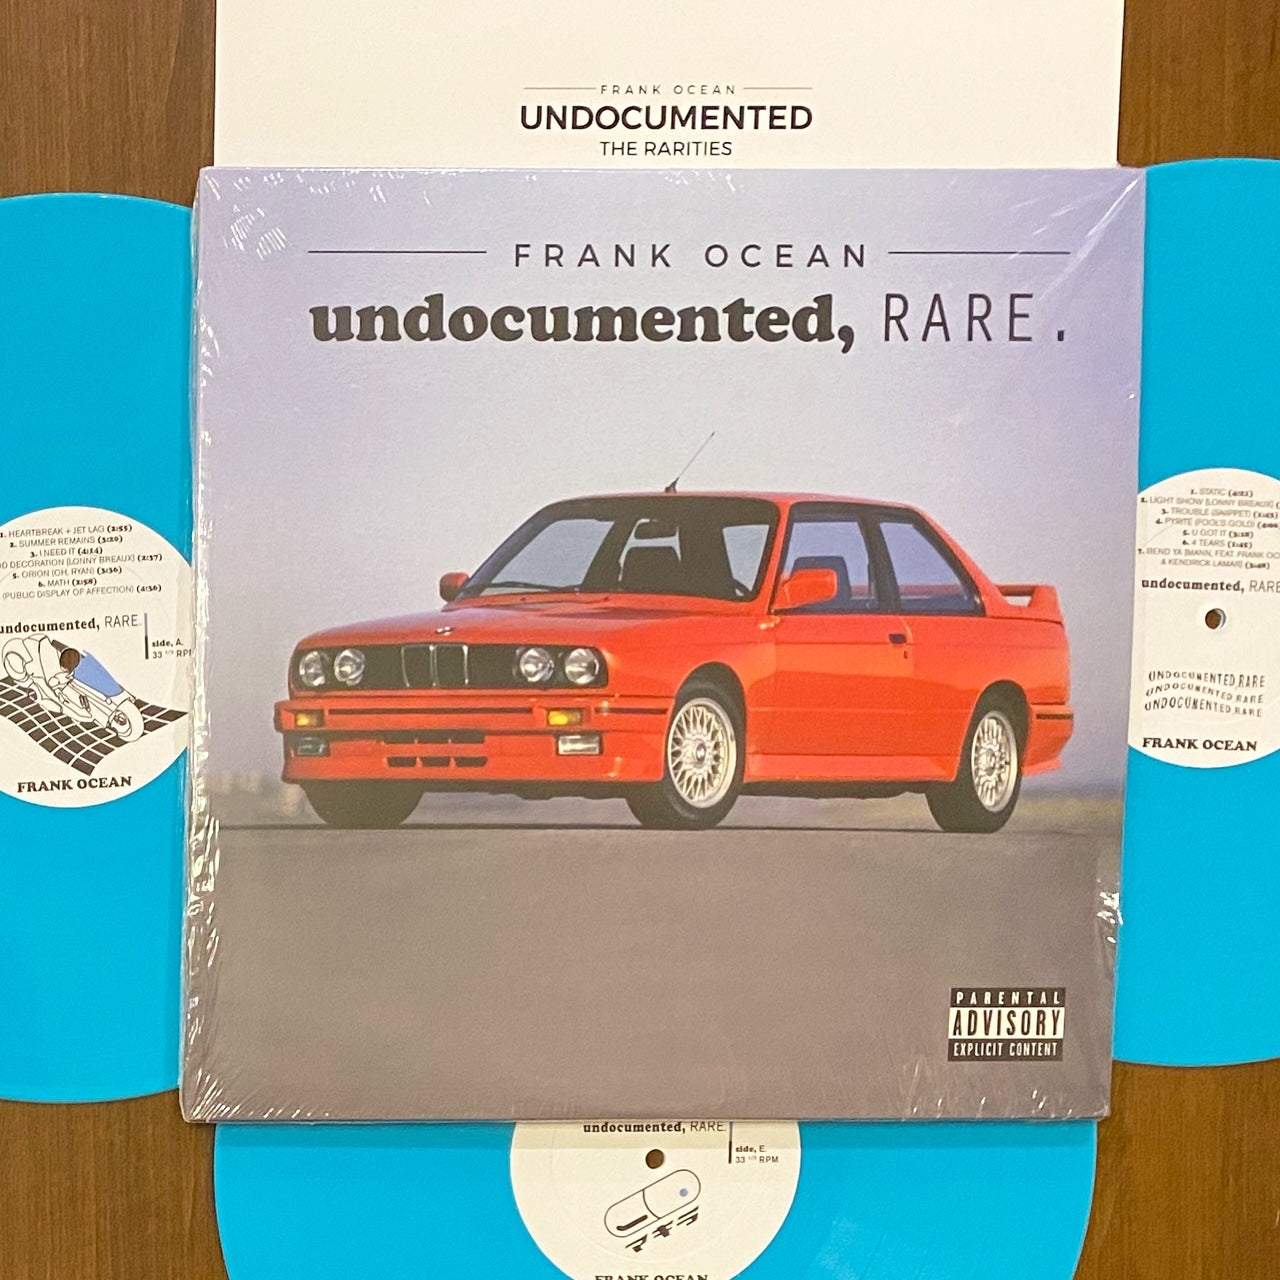 Frank Ocean / Undocumented, RARE.